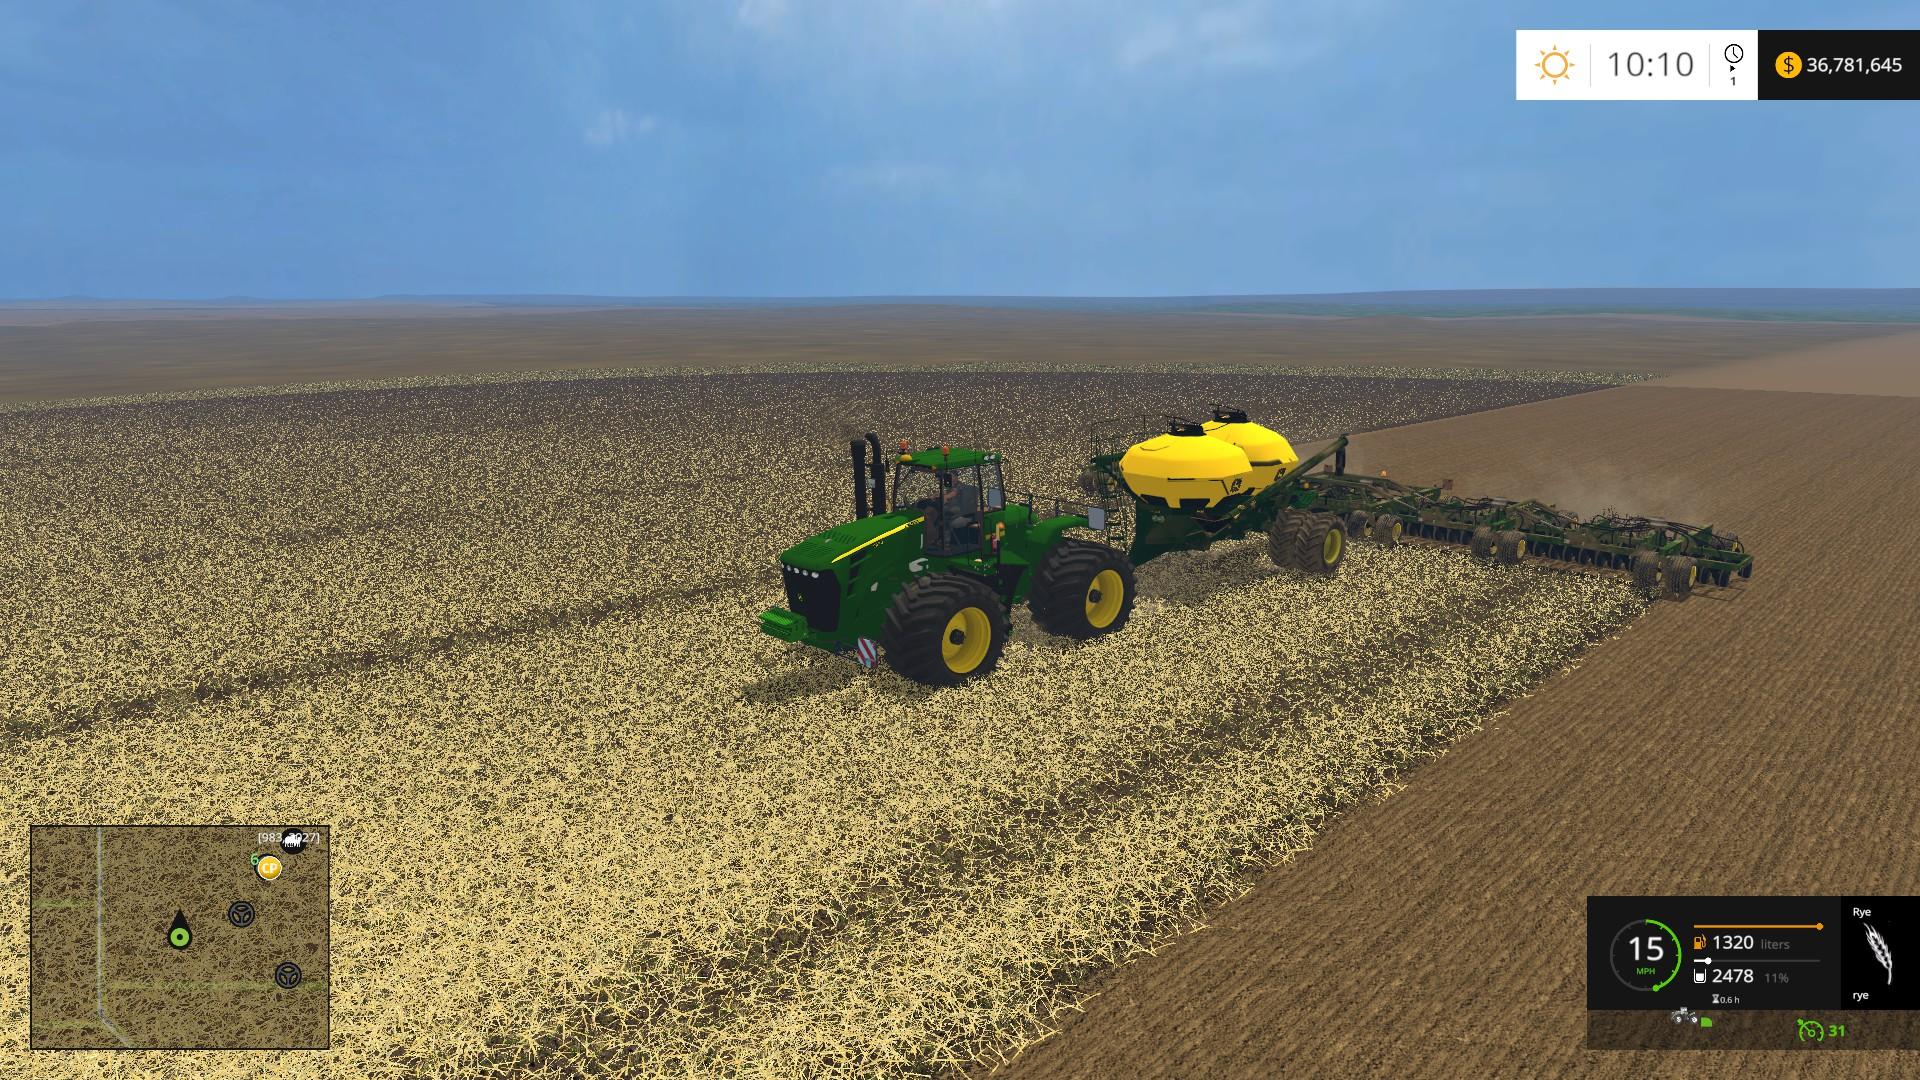 John Deere Air Seeder Fixed Final • Farming Simulator 19 17 22 Mods Fs19 17 22 Mods 1446